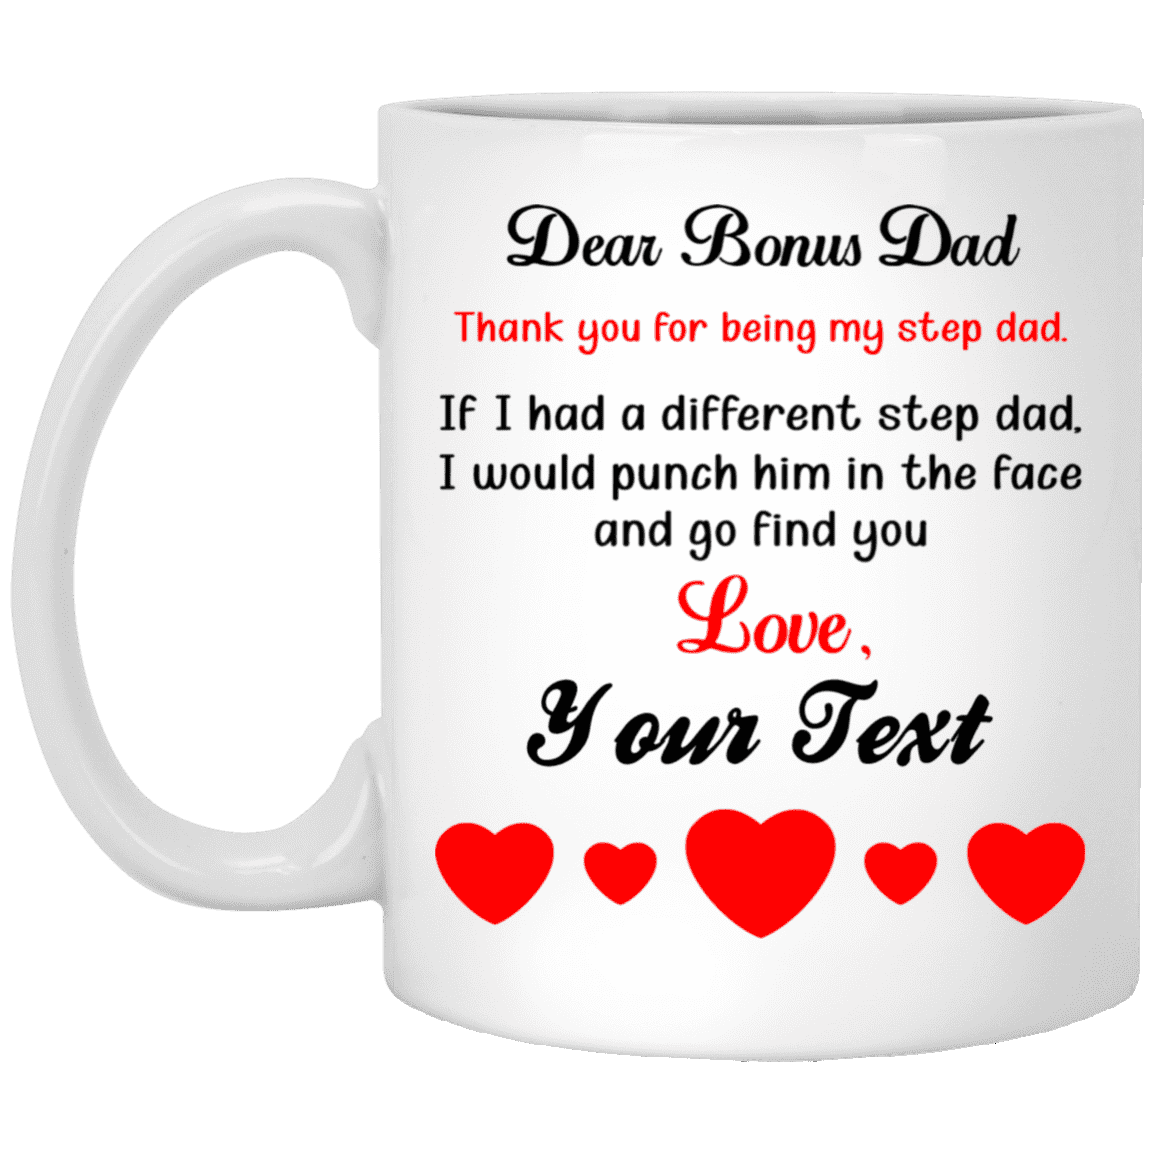 Inktee Store - Dear Bonus Dad Mug Image